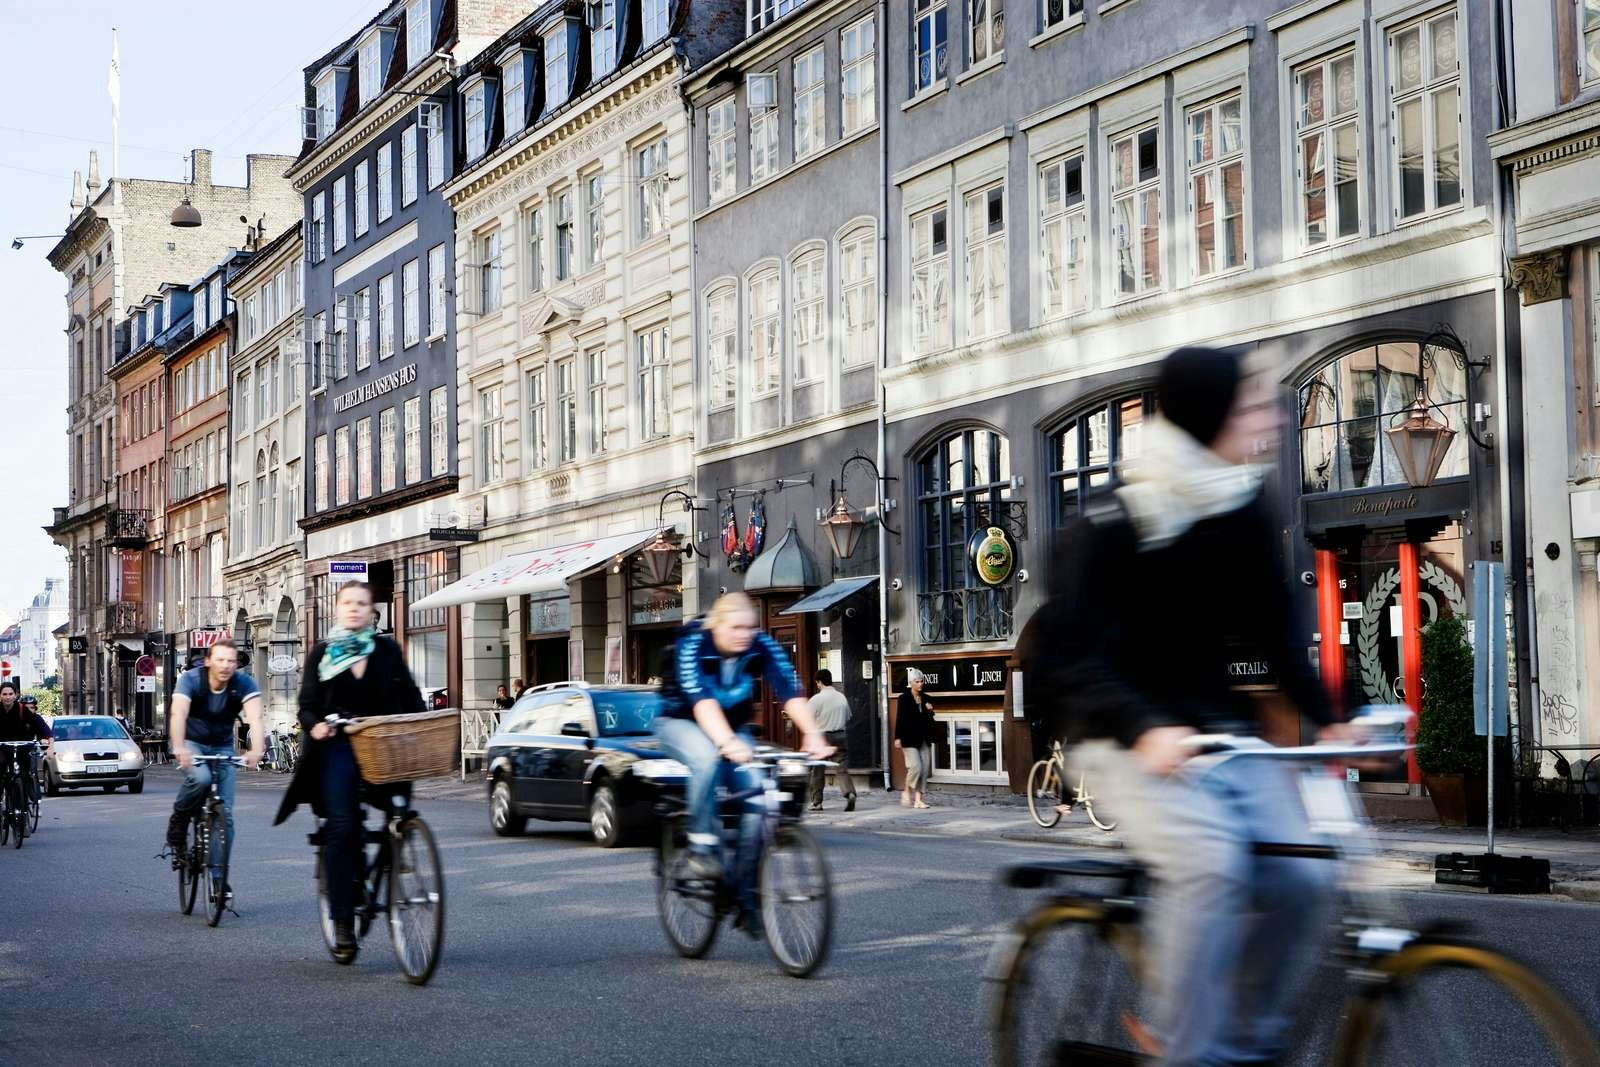 Cyclists on a street in Copenhagen